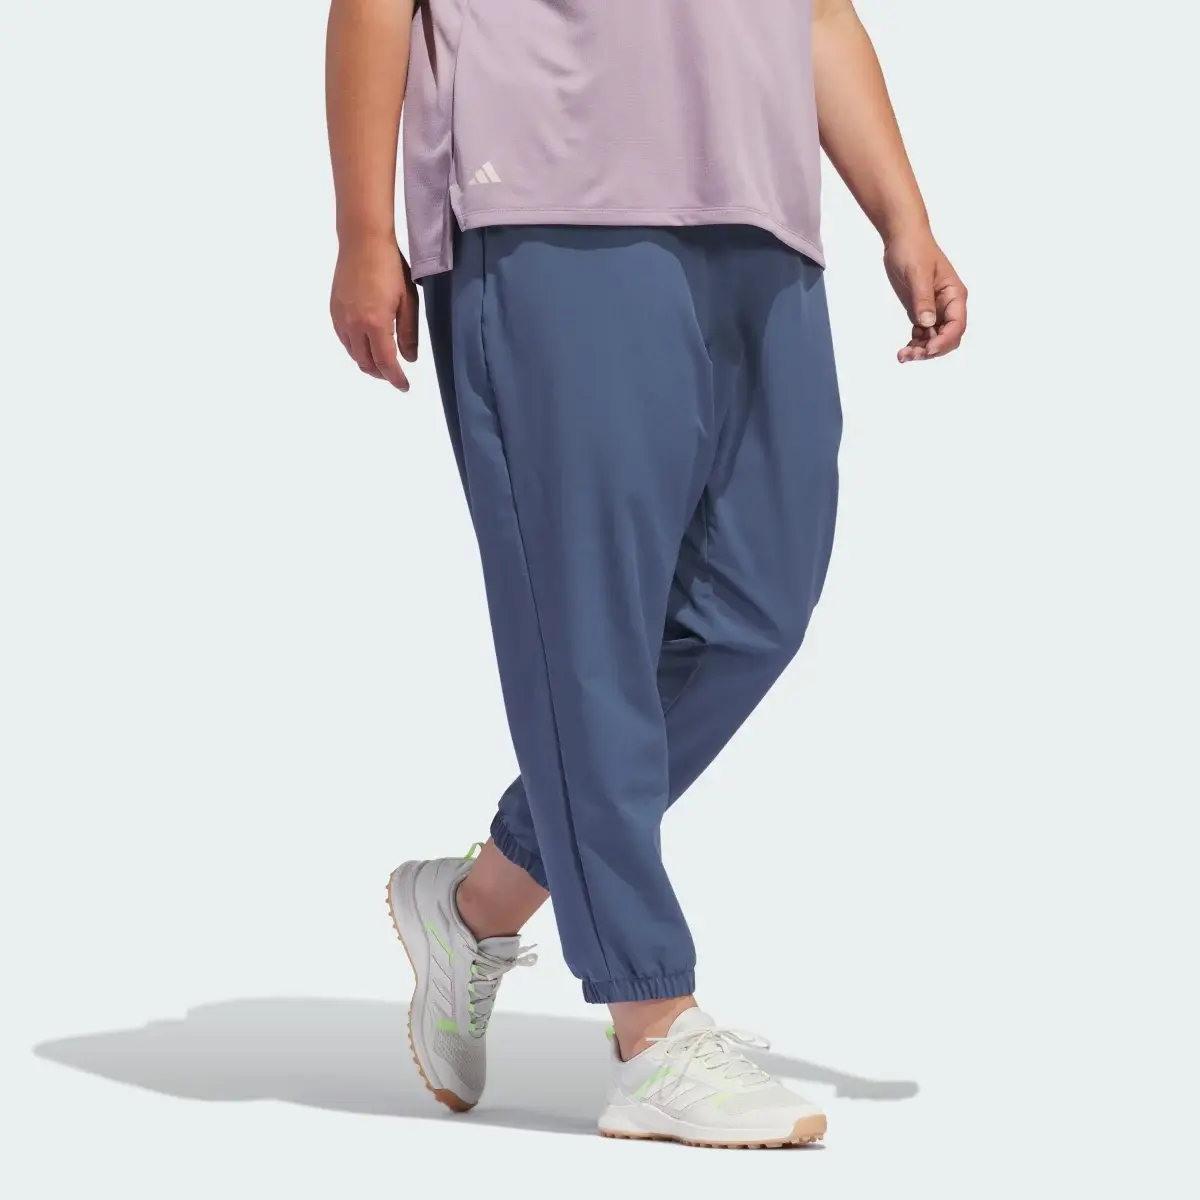 Adidas Spodnie dresowe Women's Ultimate365 (Plus Size). 3